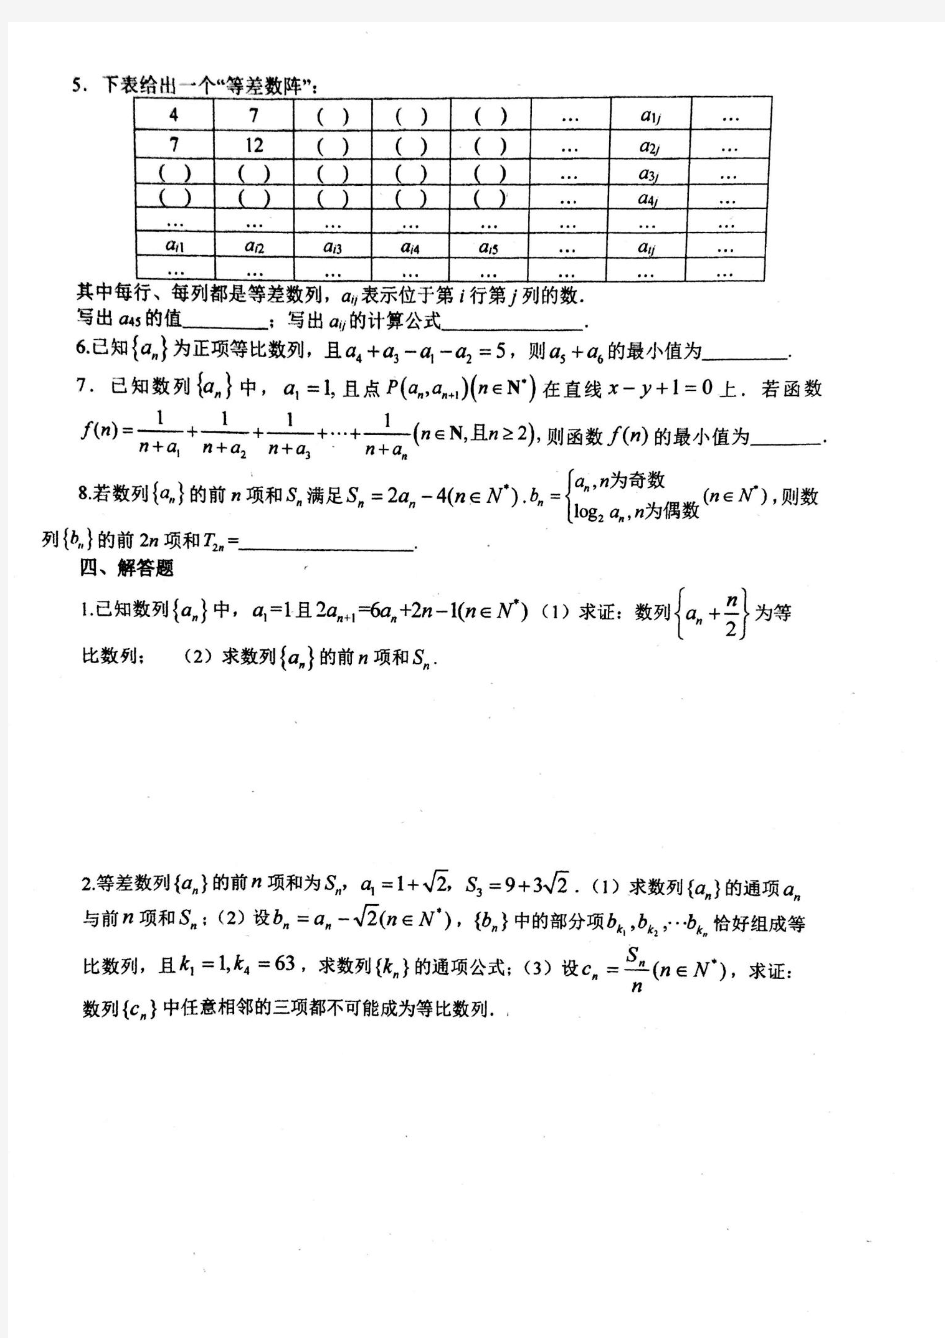 广东省深圳实验高中2020-2021学年第一学期高二数学周测(20201114)